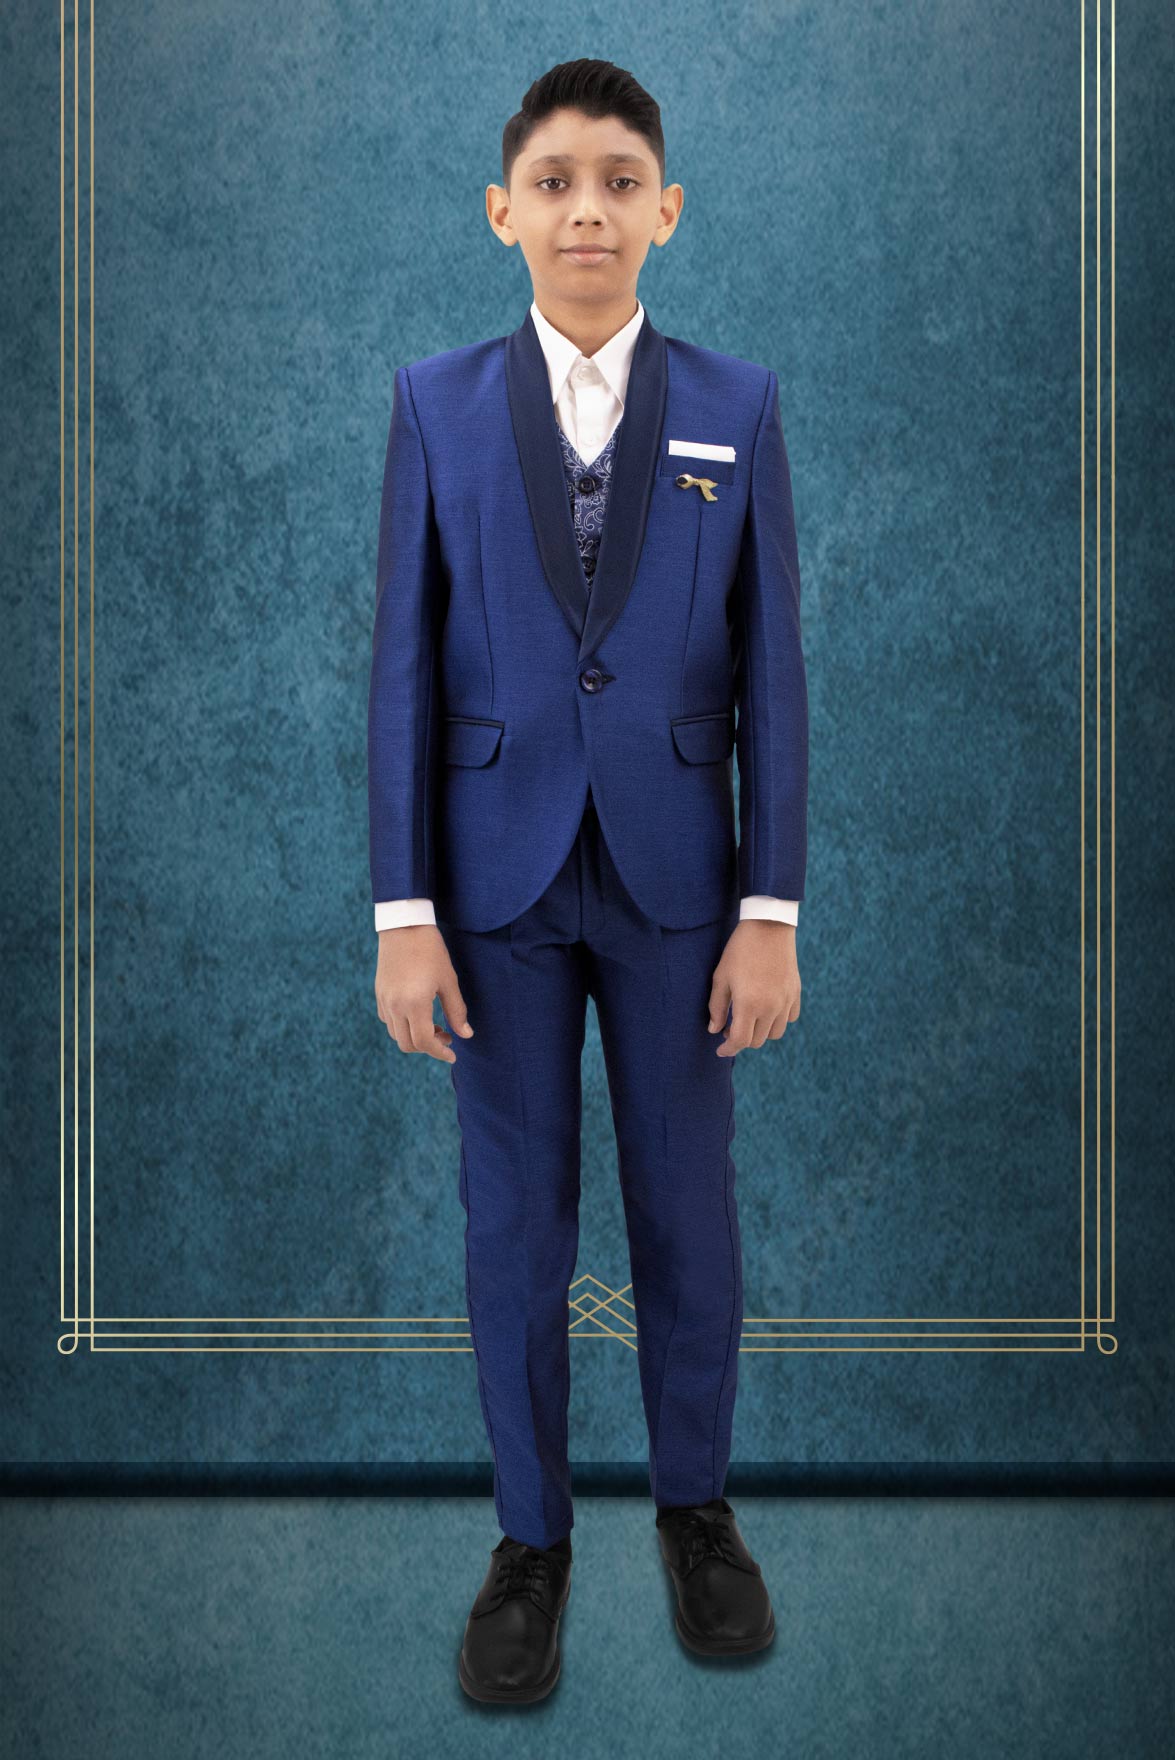 Boys' Royal Blue Suit